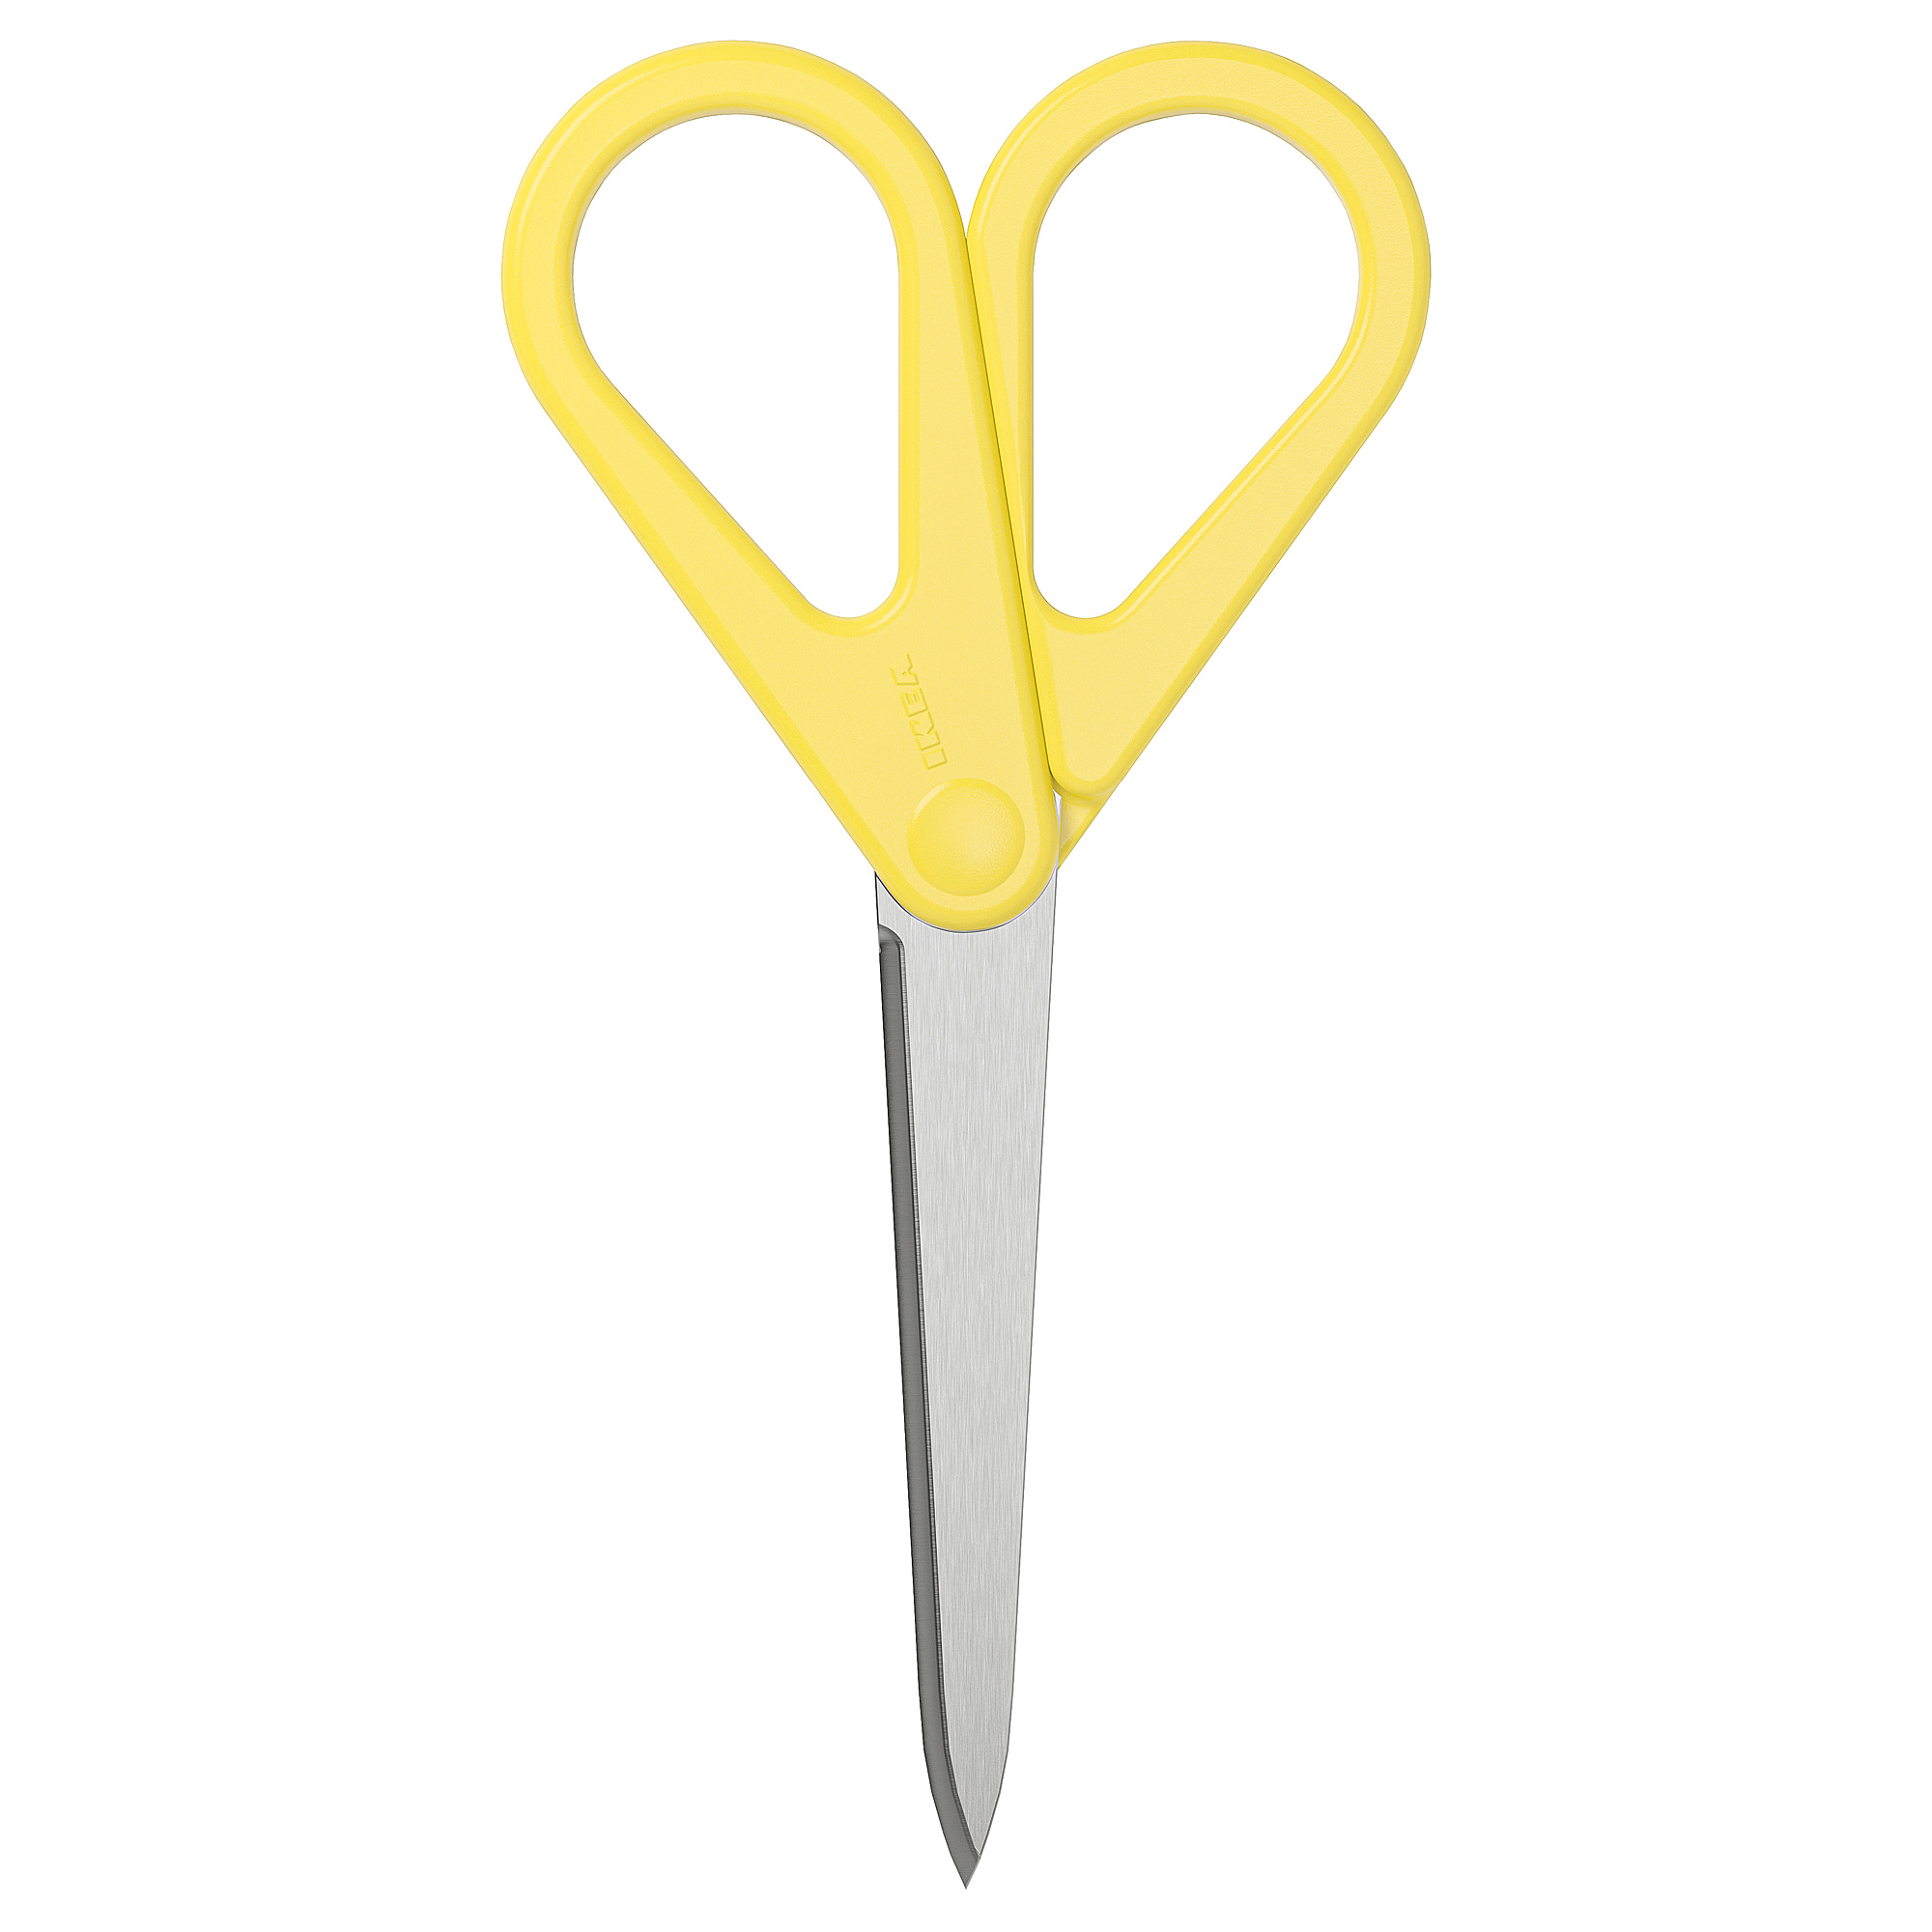 KVALIFICERA scissors